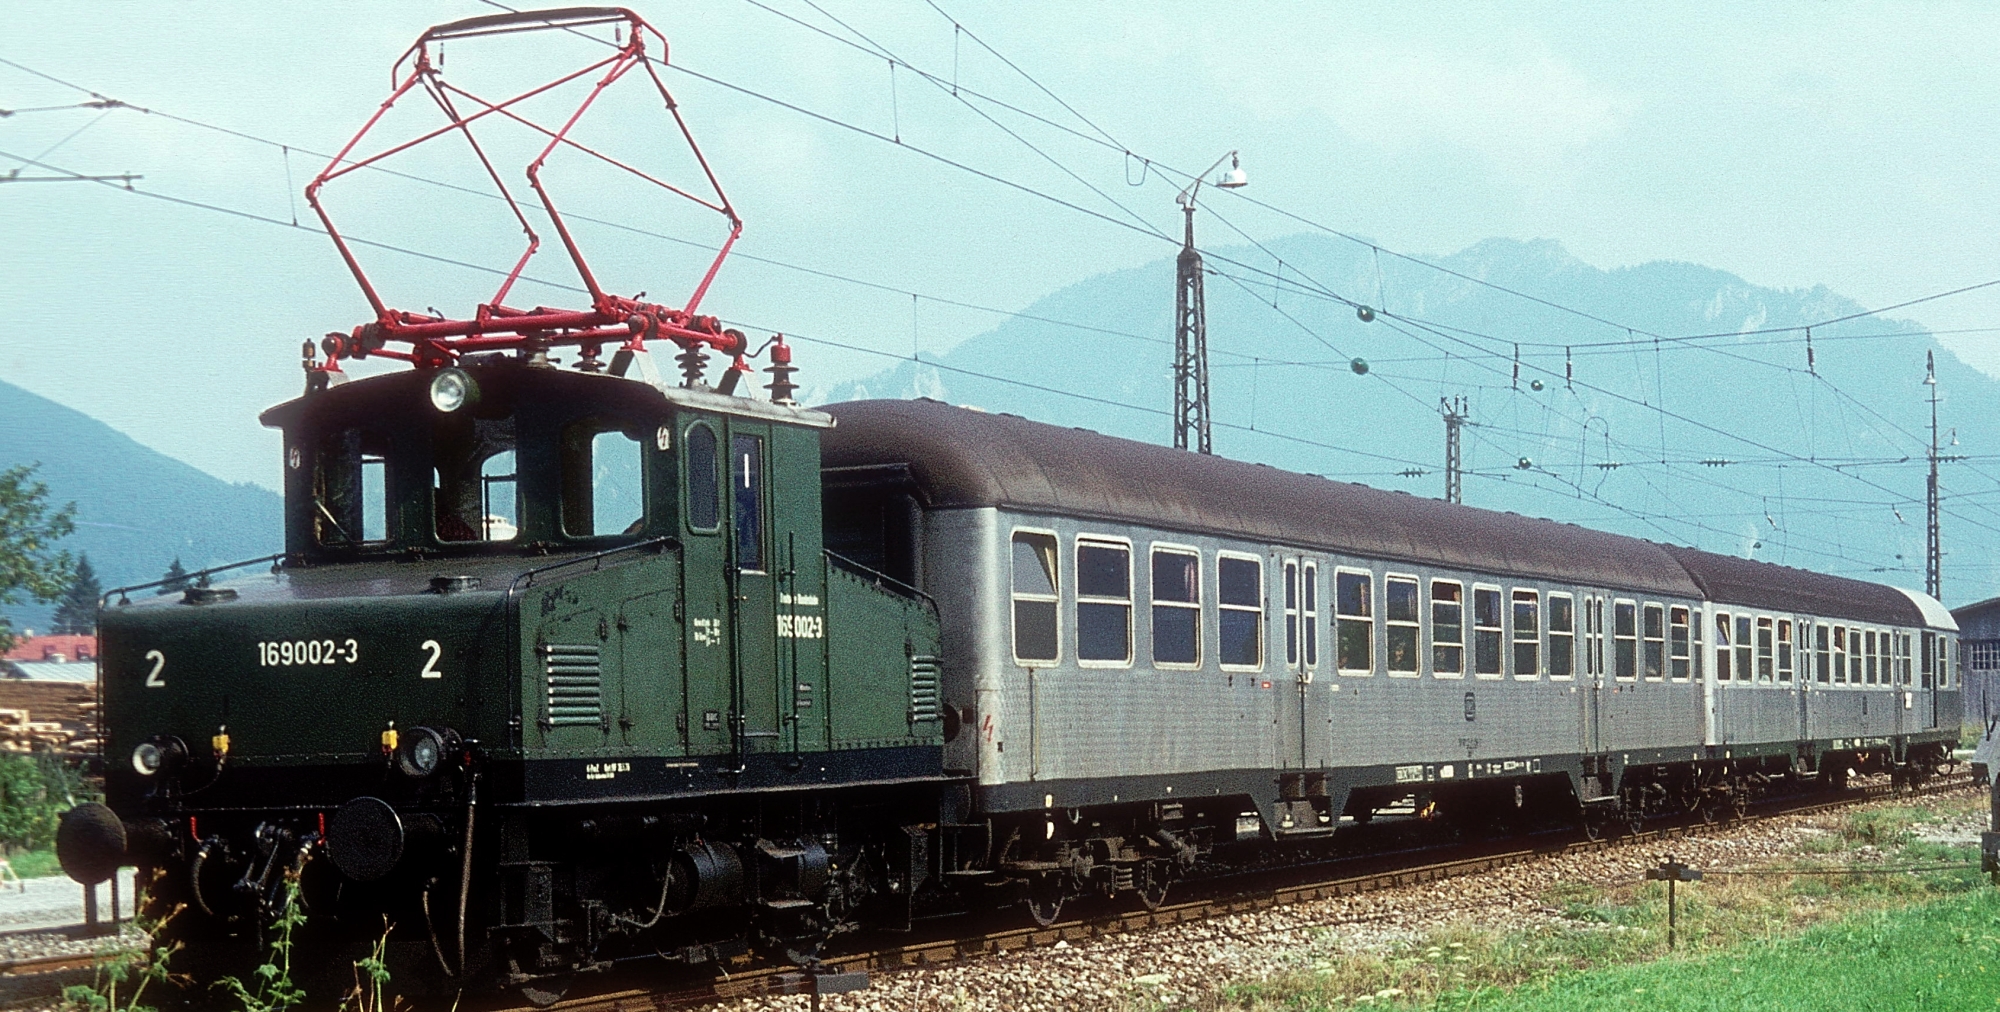 169 002 (formerly No. 2 “Pauline”) in August 1976 in Unterammergau